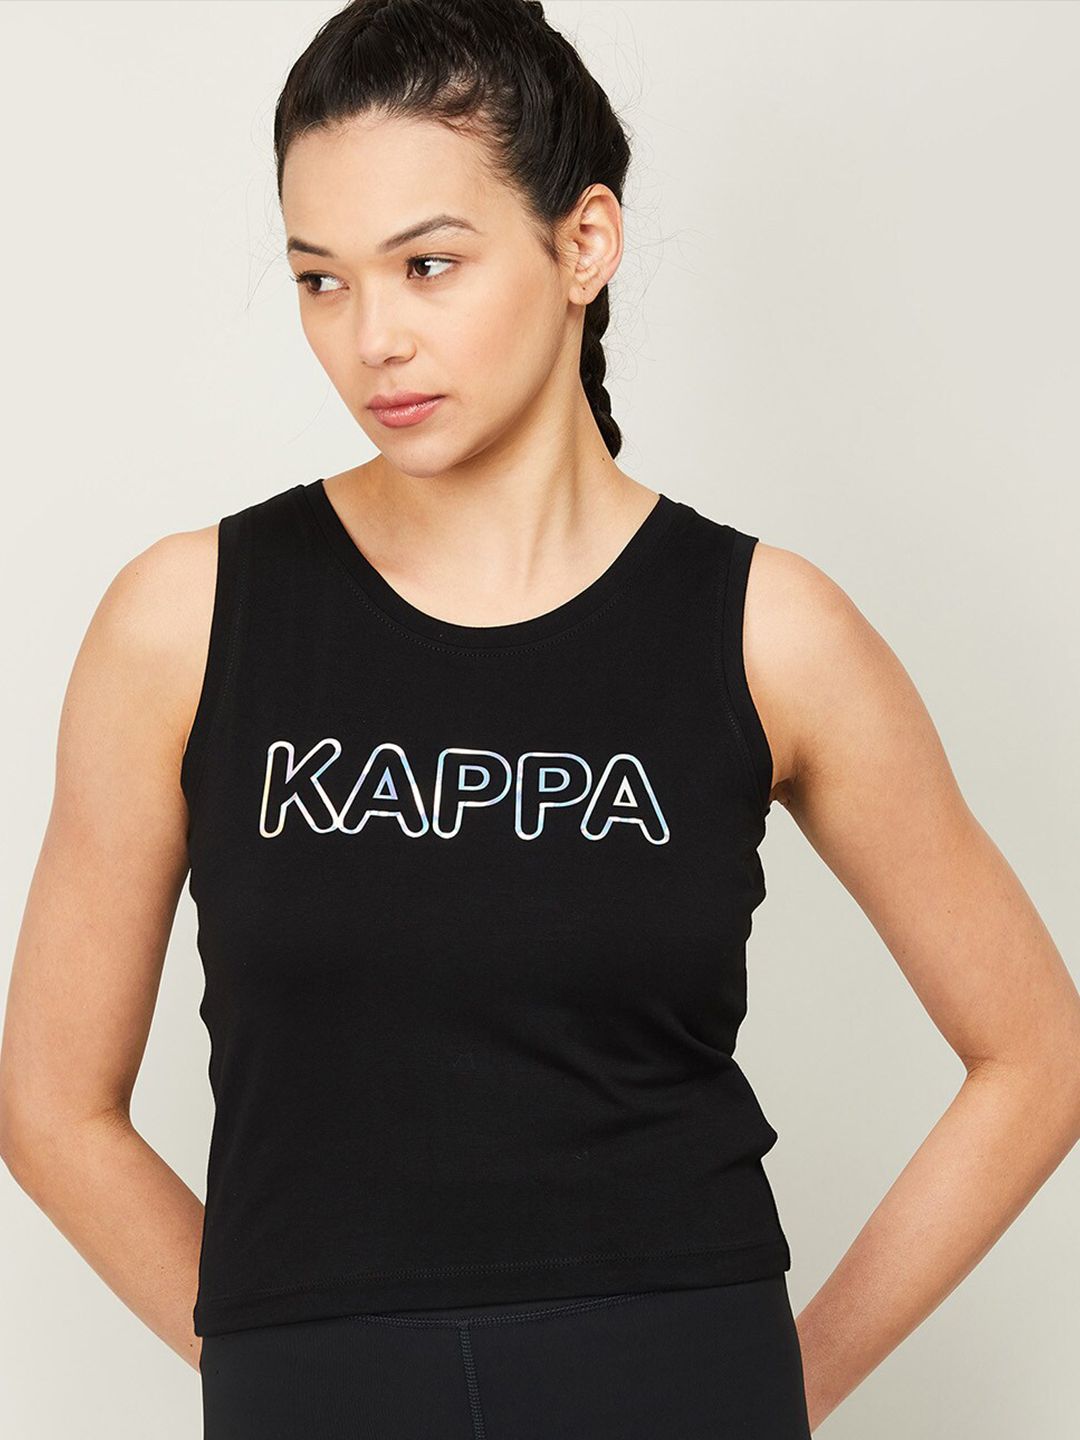 Kappa Women Black Brand Logo Printed Training or Gym T-shirt Price in India